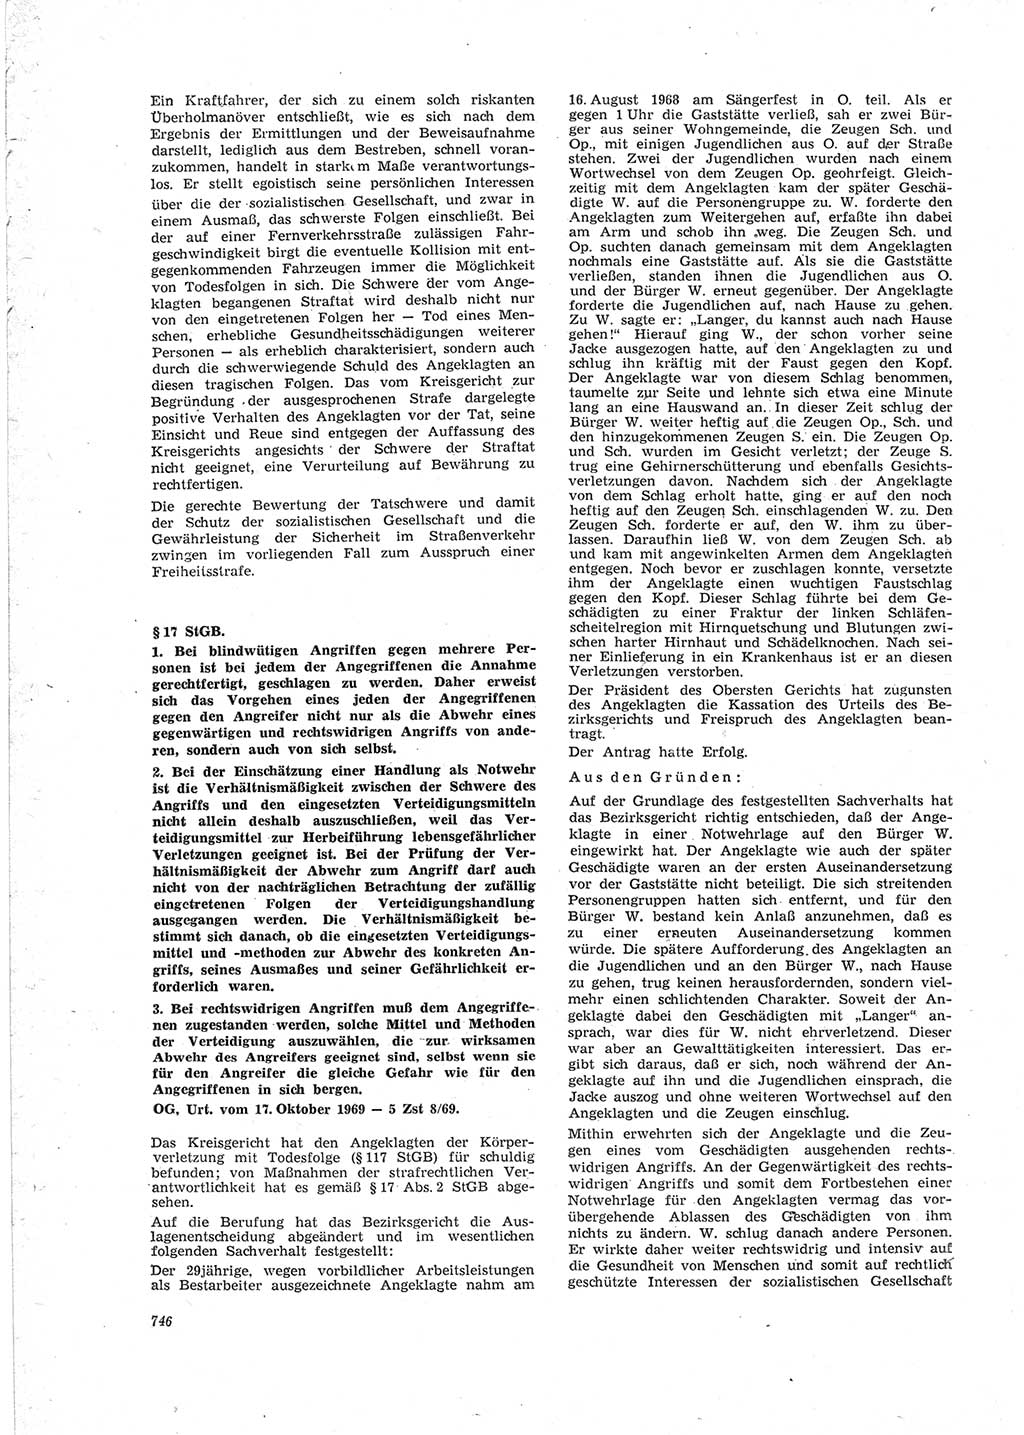 Neue Justiz (NJ), Zeitschrift für Recht und Rechtswissenschaft [Deutsche Demokratische Republik (DDR)], 23. Jahrgang 1969, Seite 746 (NJ DDR 1969, S. 746)